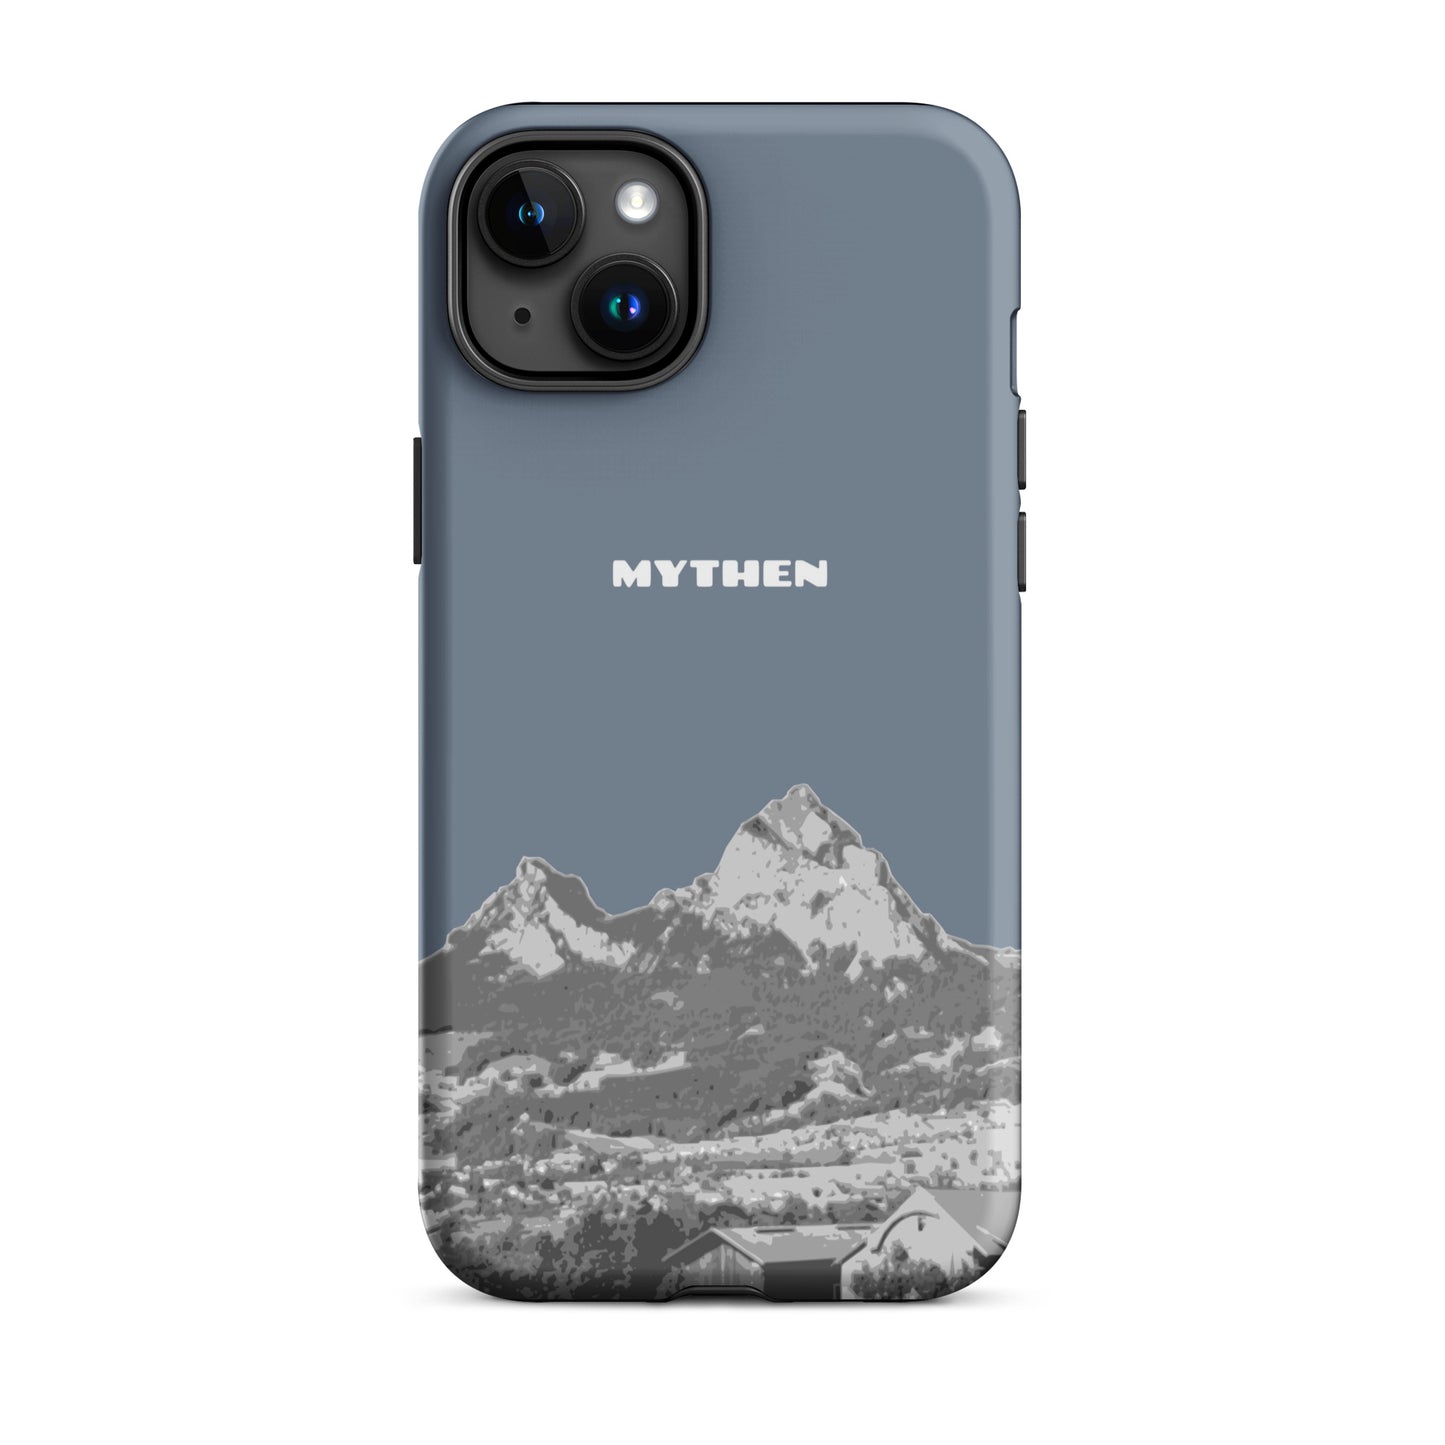 Hülle für das iPhone 15 Plus von Apple in der Farbe Schiefergrau, die den Grossen Mythen und den Kleinen Mythen bei Schwyz zeigt. 